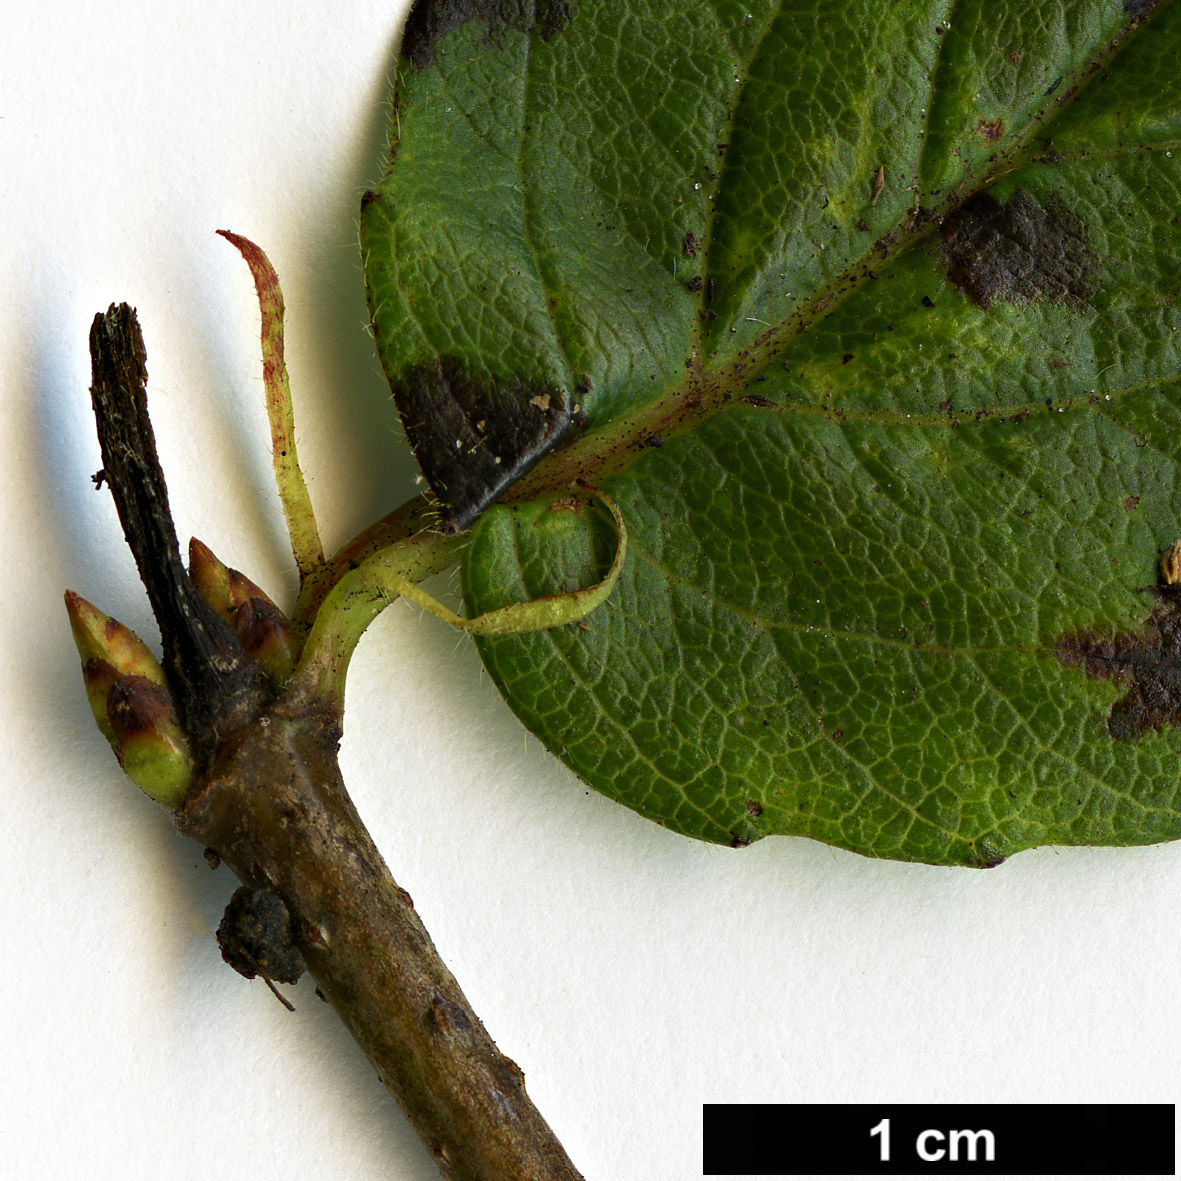 High resolution image: Family: Adoxaceae - Genus: Viburnum - Taxon: rafinesquianum